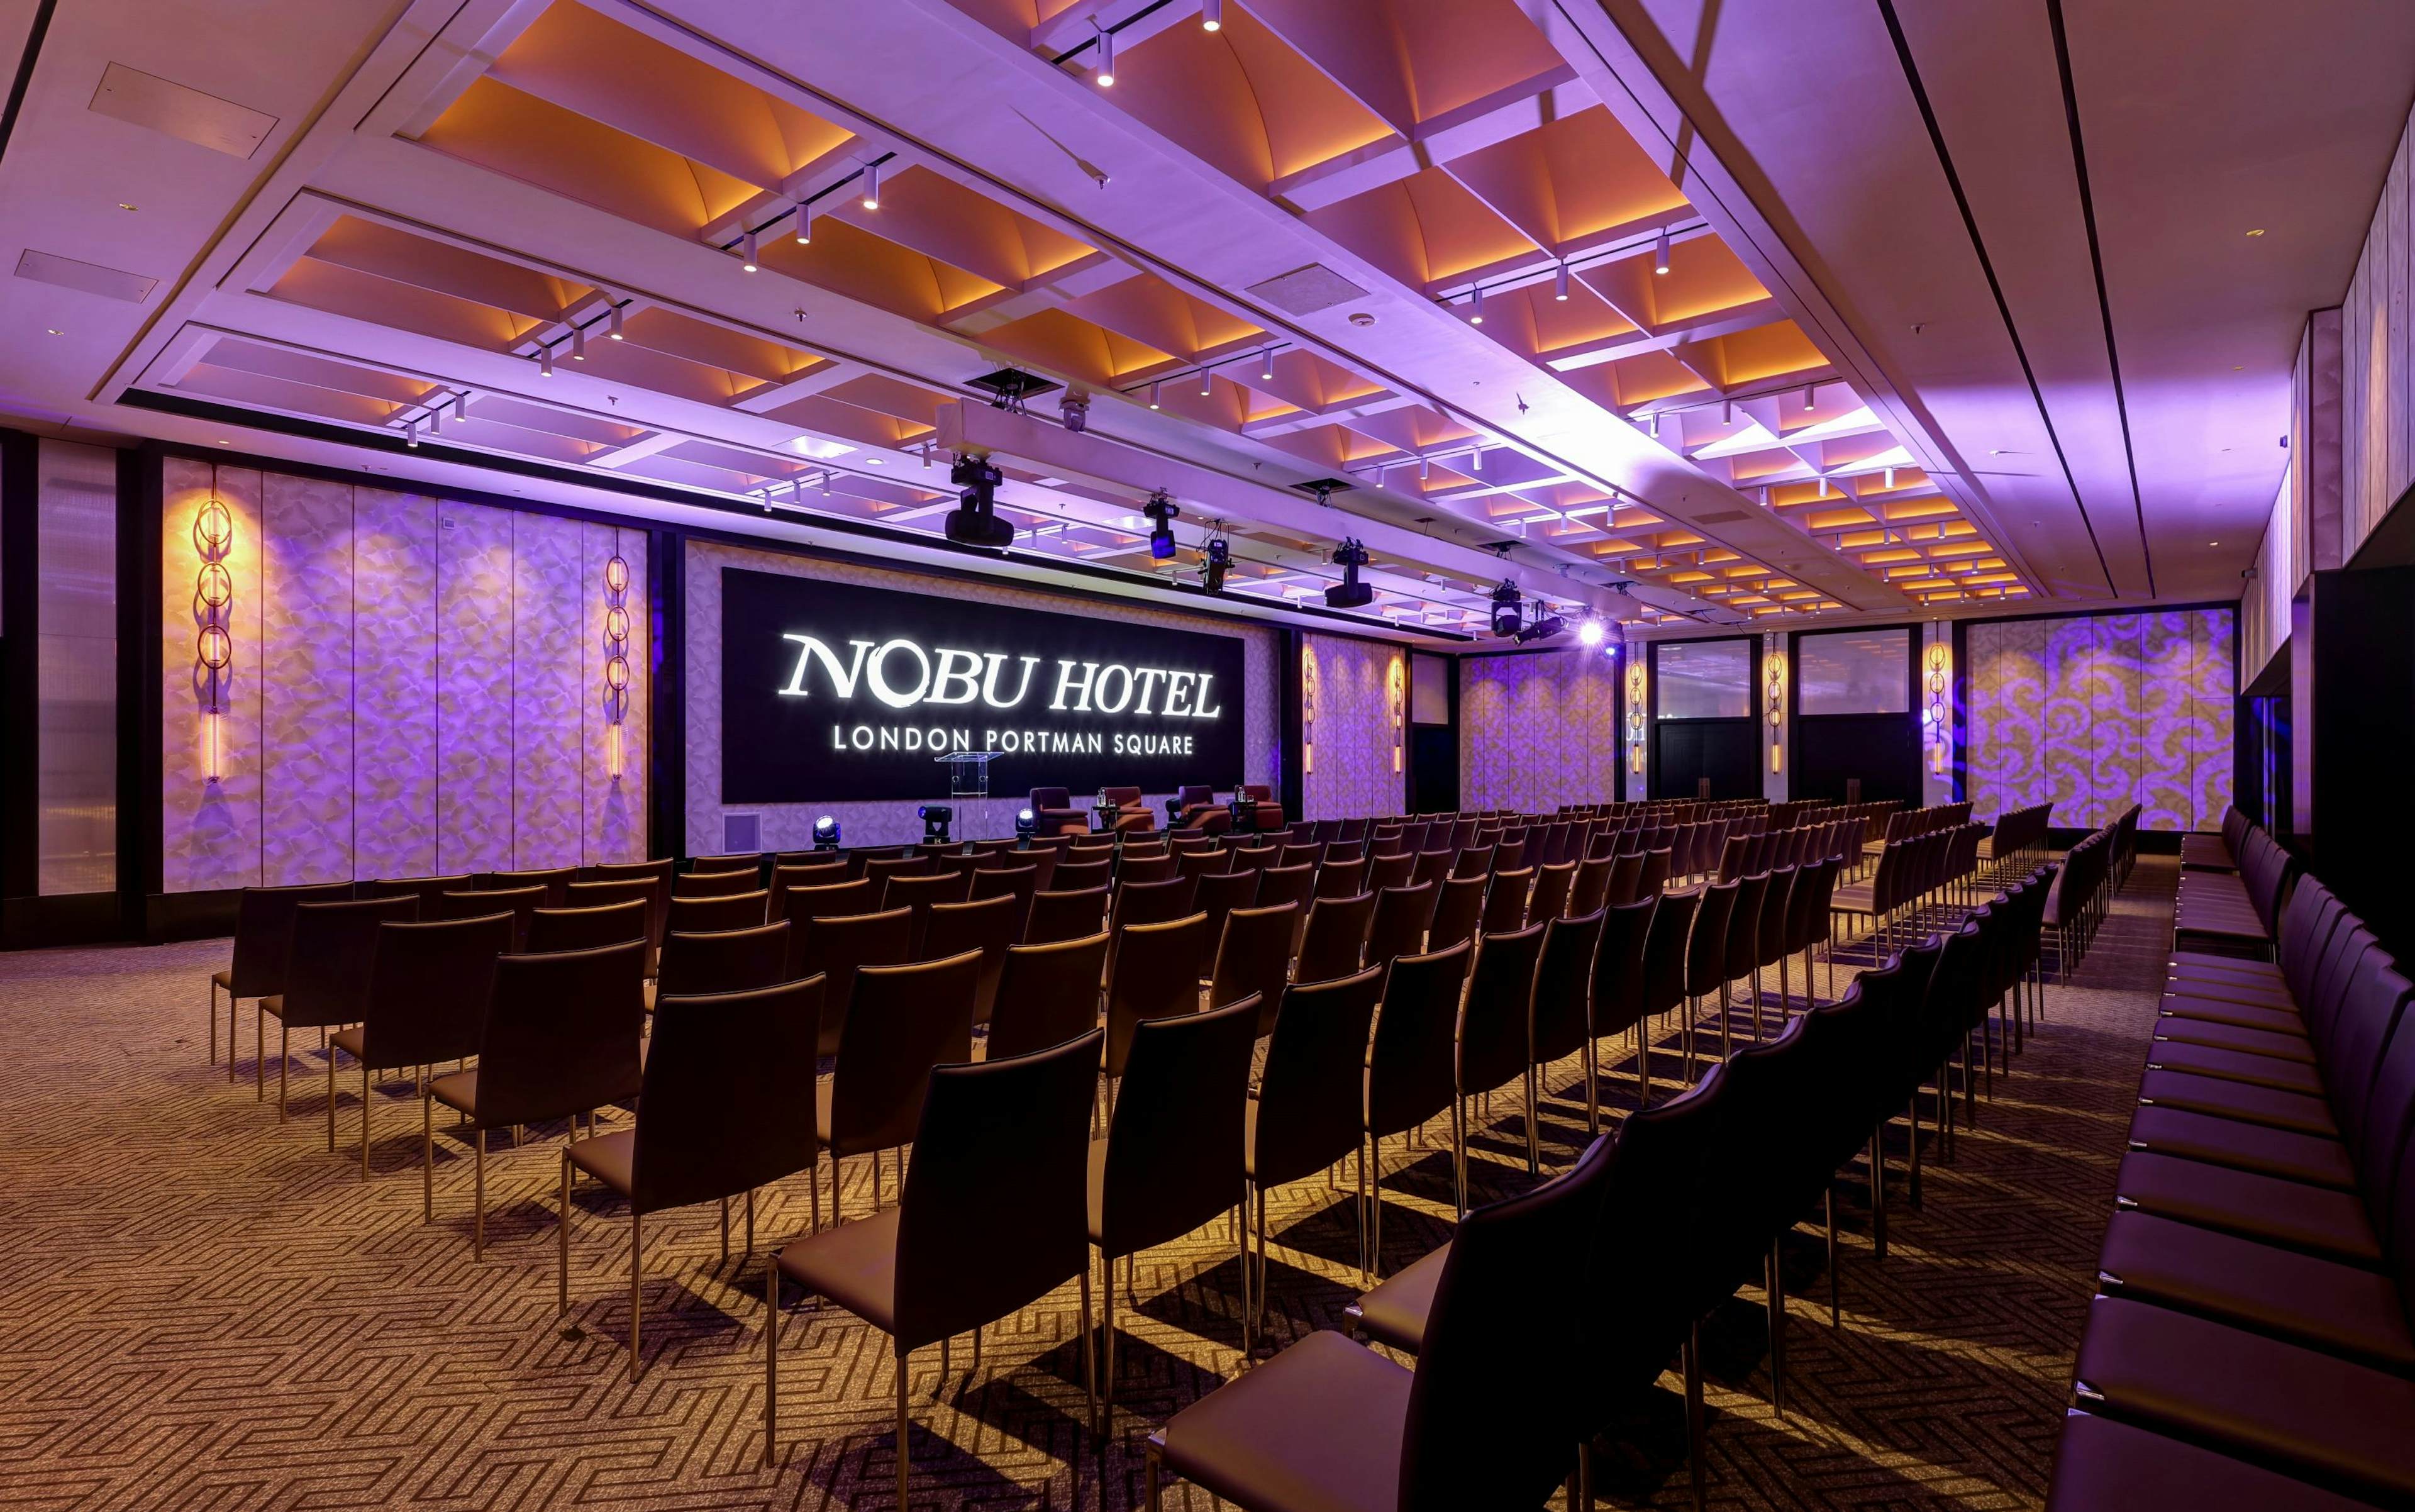 Nobu Hotel Portman Square - image 1